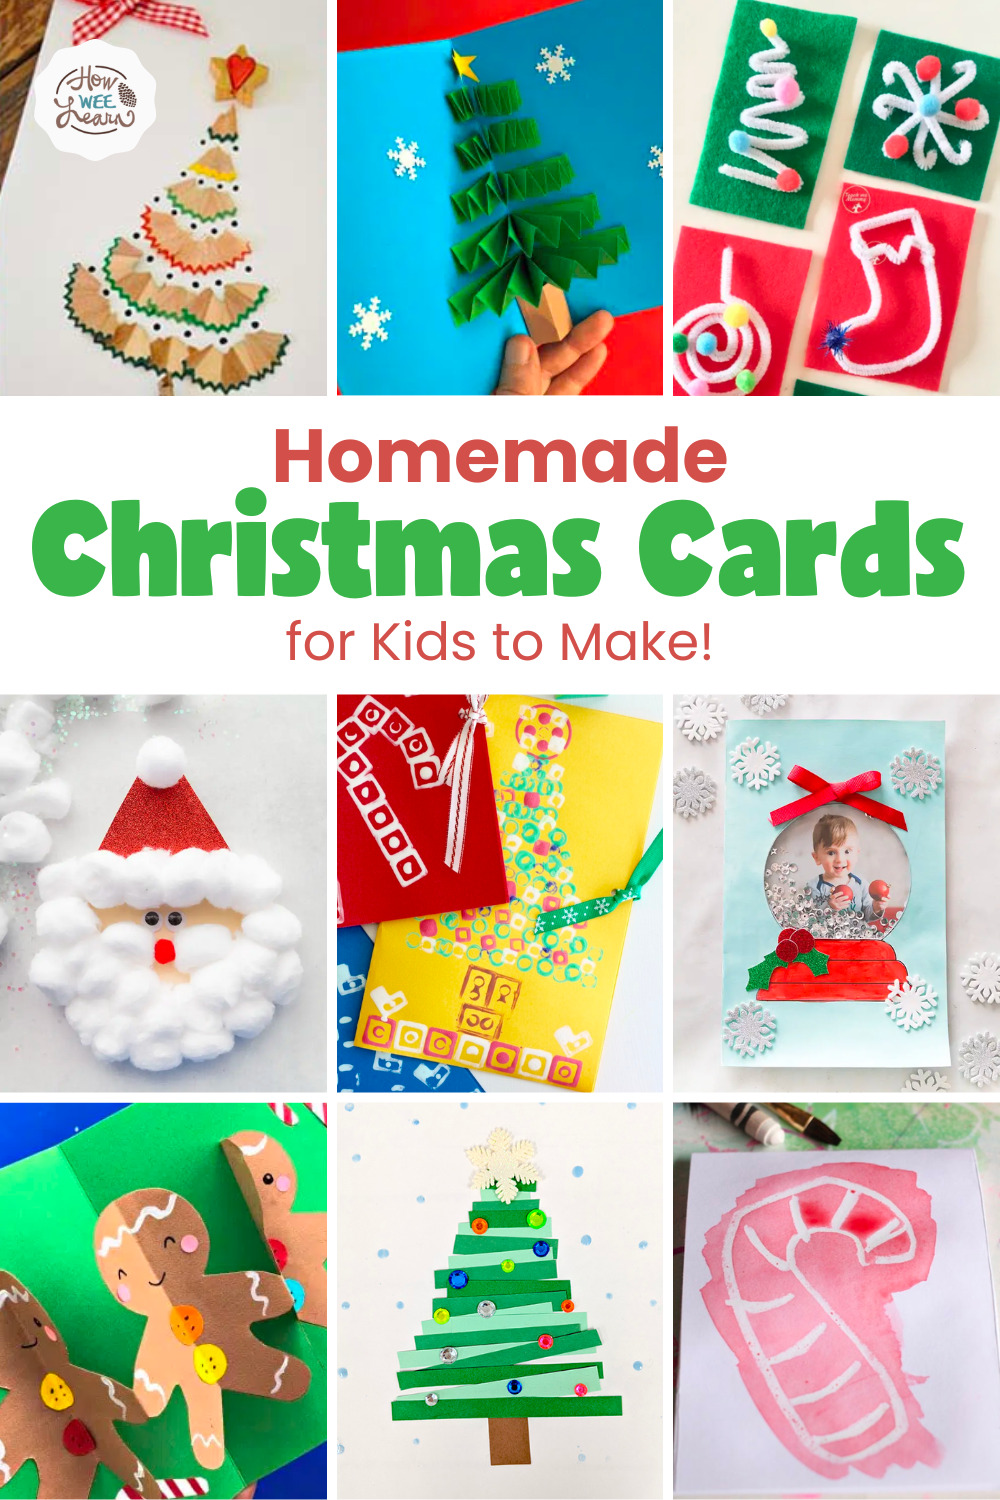 Homemade Christmas Cards for Kids to Make